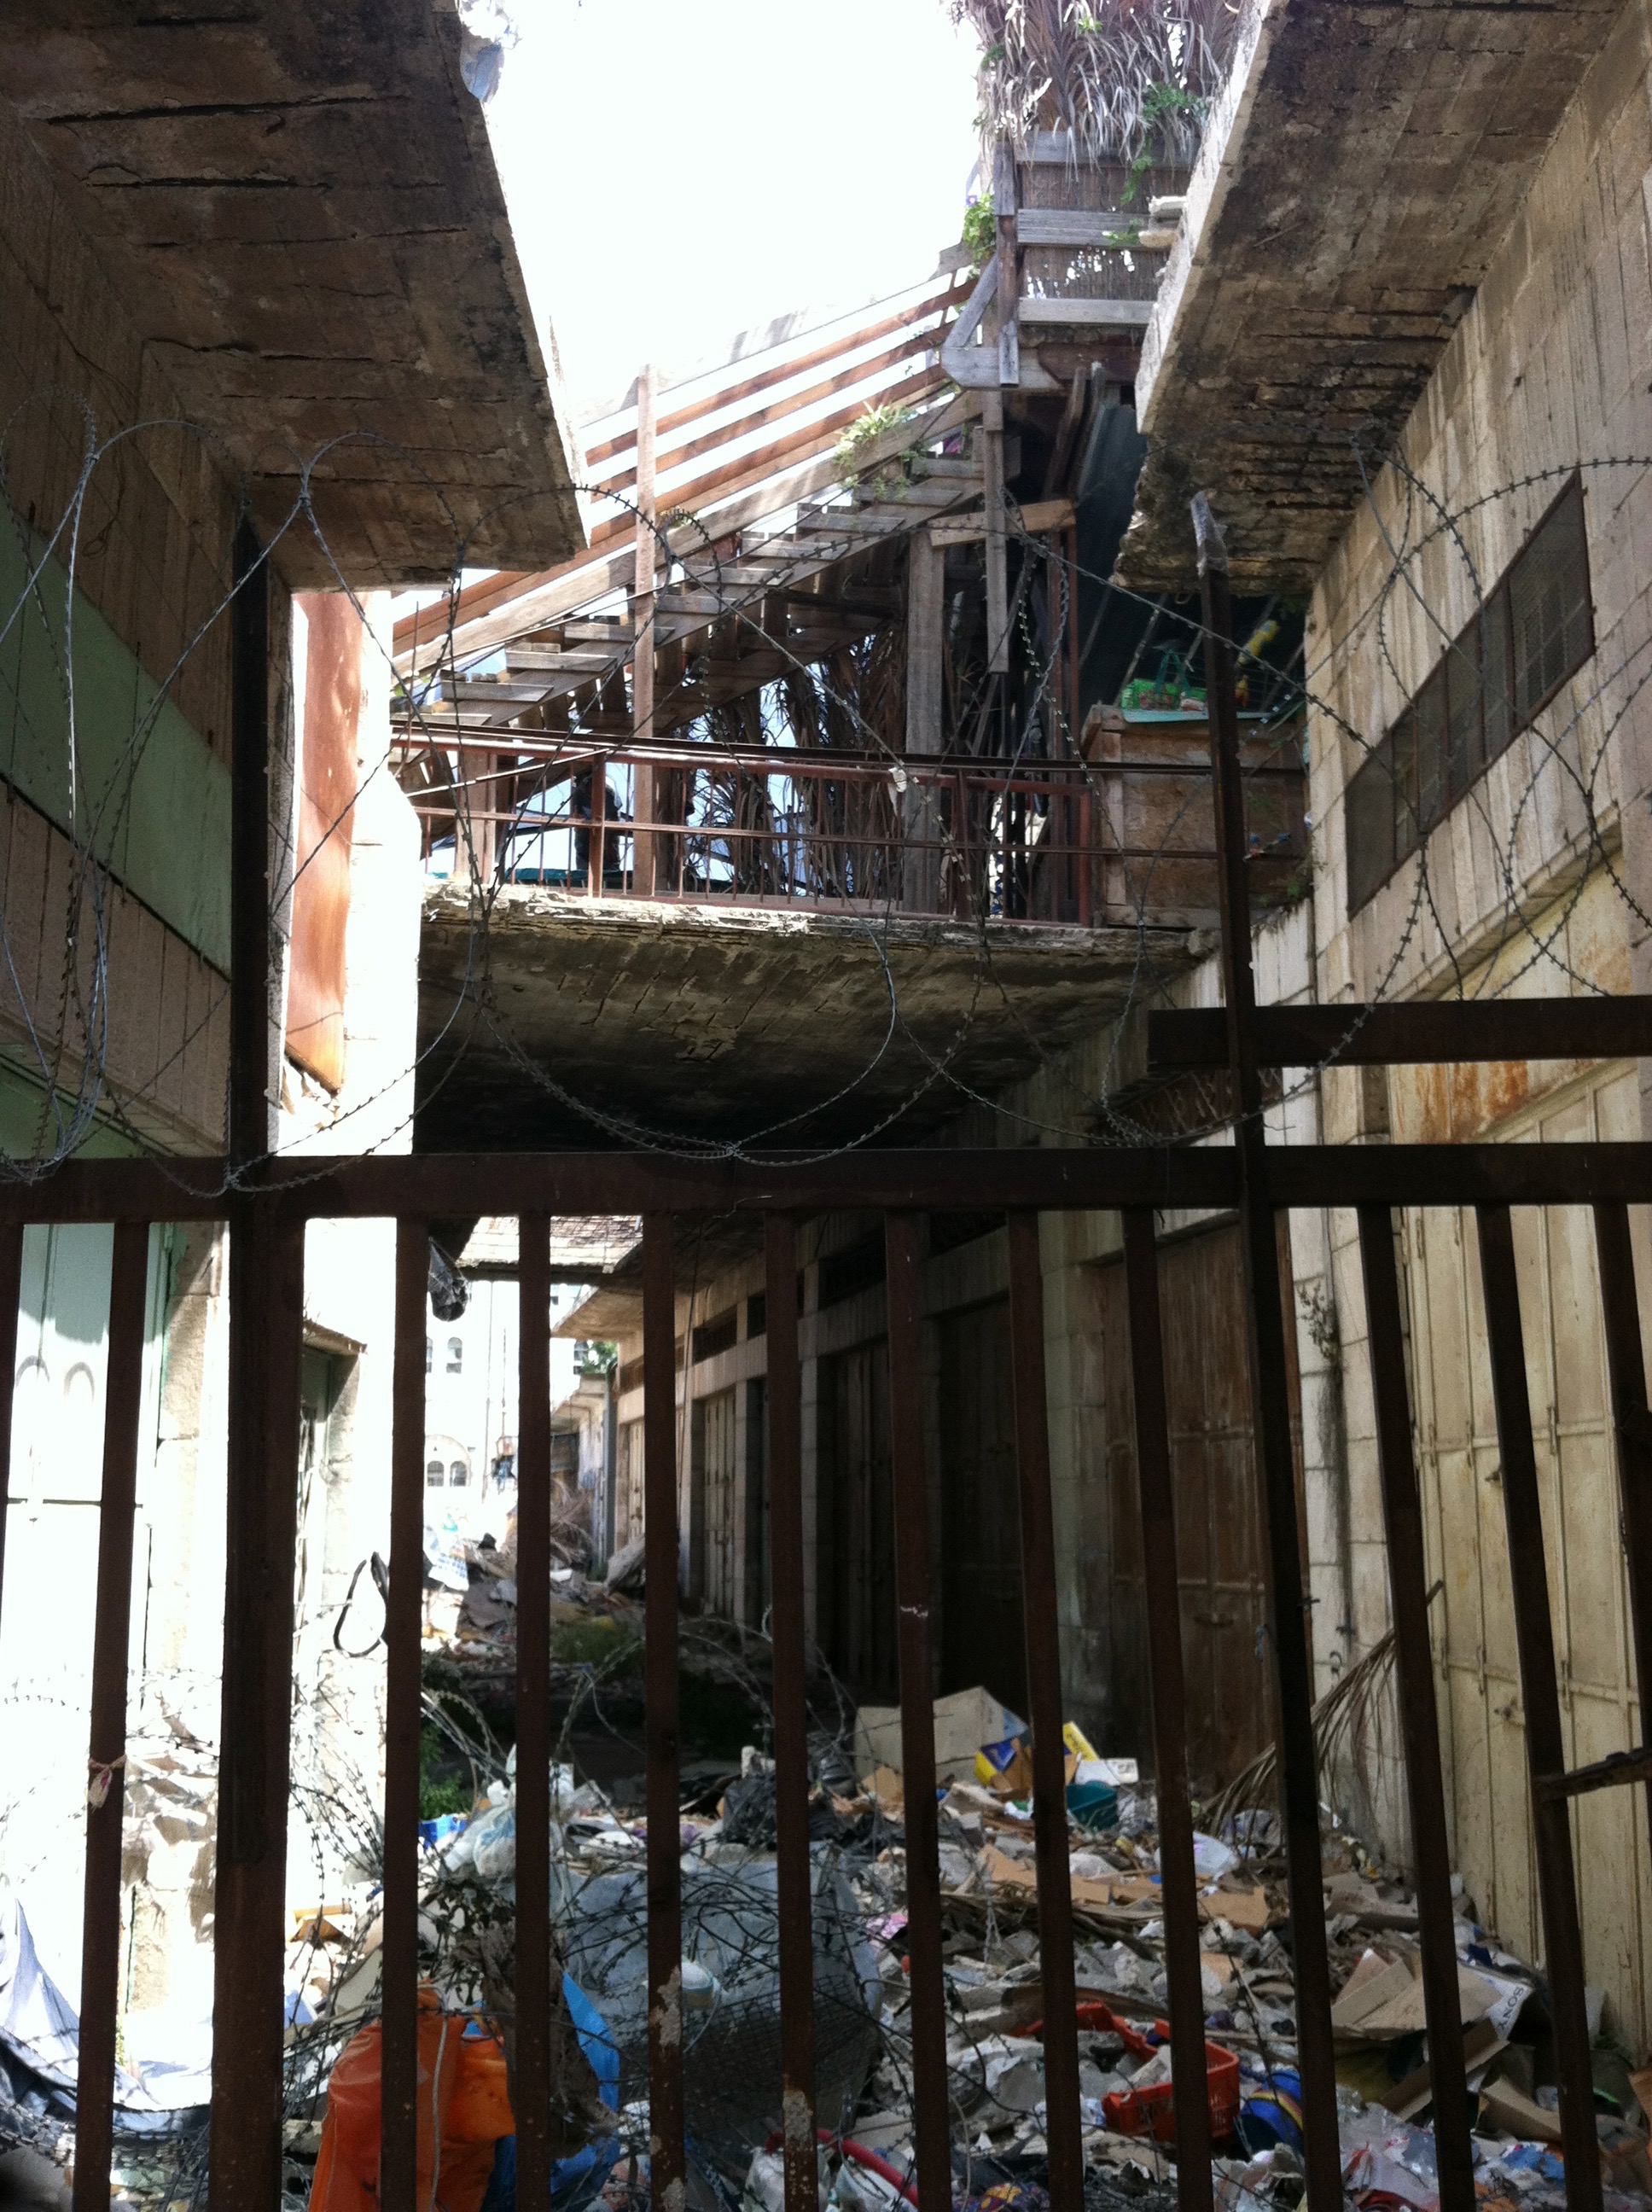 旧市场-住在楼上的以色列定居者使生活无法继续。